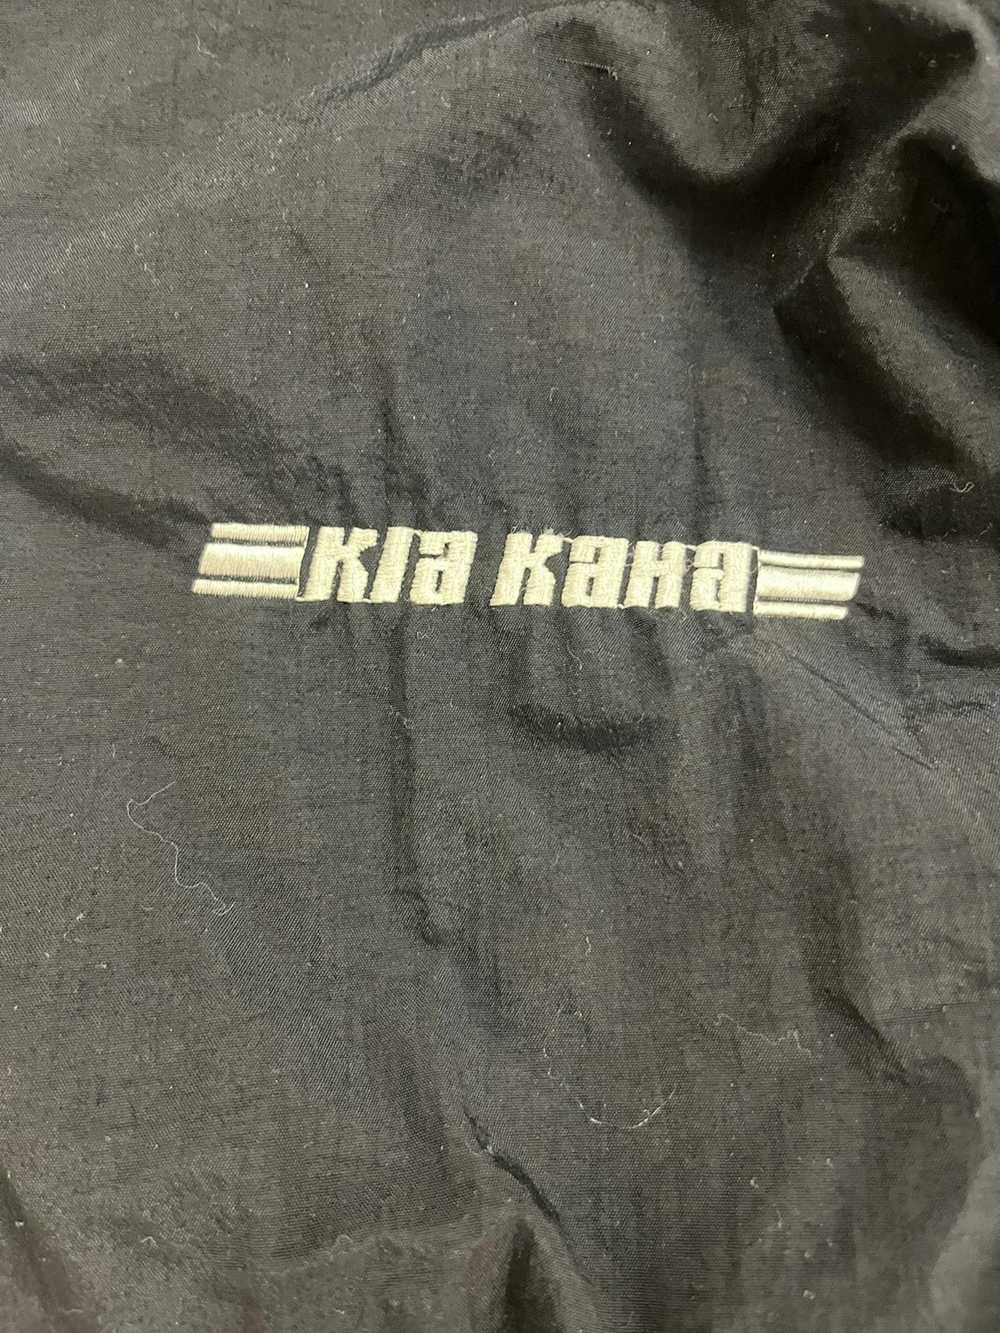 Racing × Vintage Vintage Kia Kaha Racing Jacket - image 3